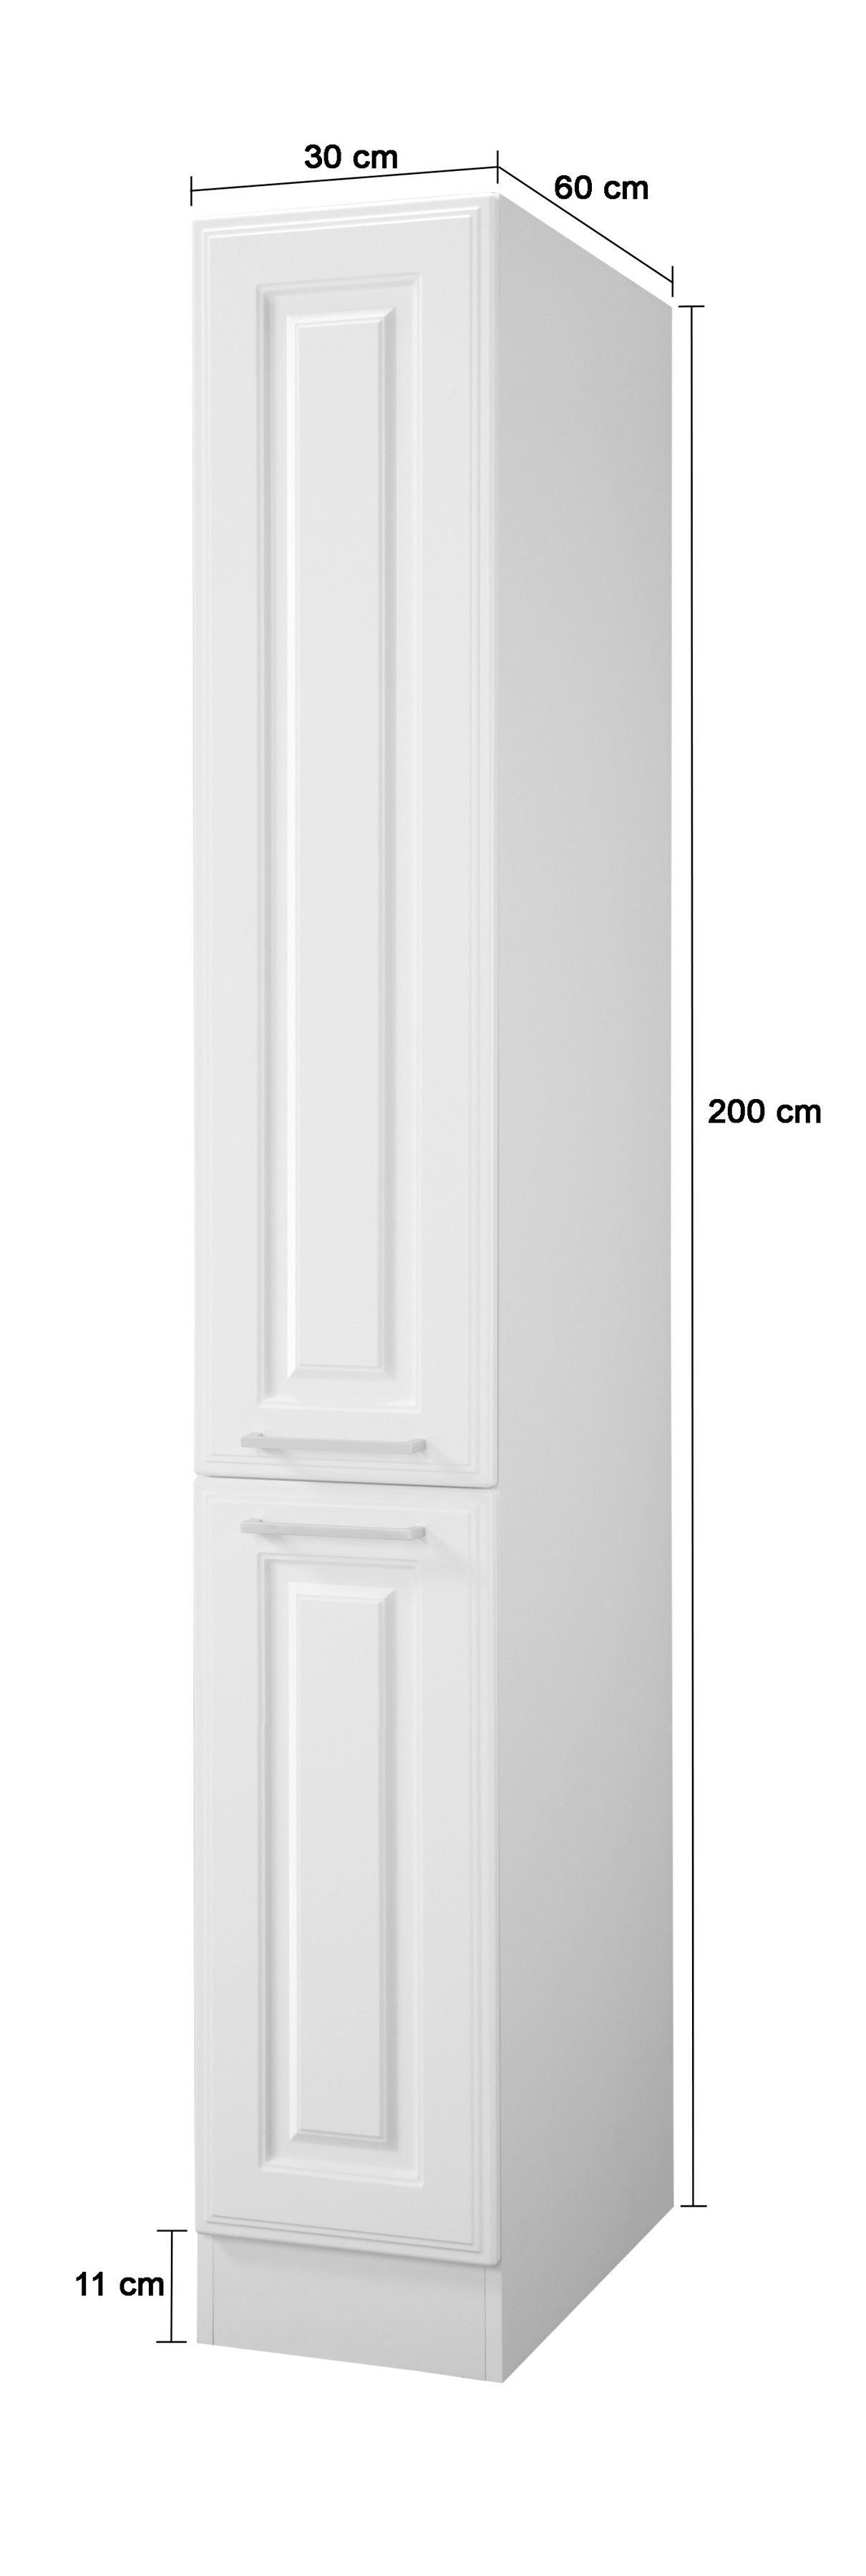 HELD MÖBEL Apothekerschrank Stockholm, Breite 30 cm weiß/weiß hoch, 200 cm viel MDF-Fronten, hochwertige Stauraum